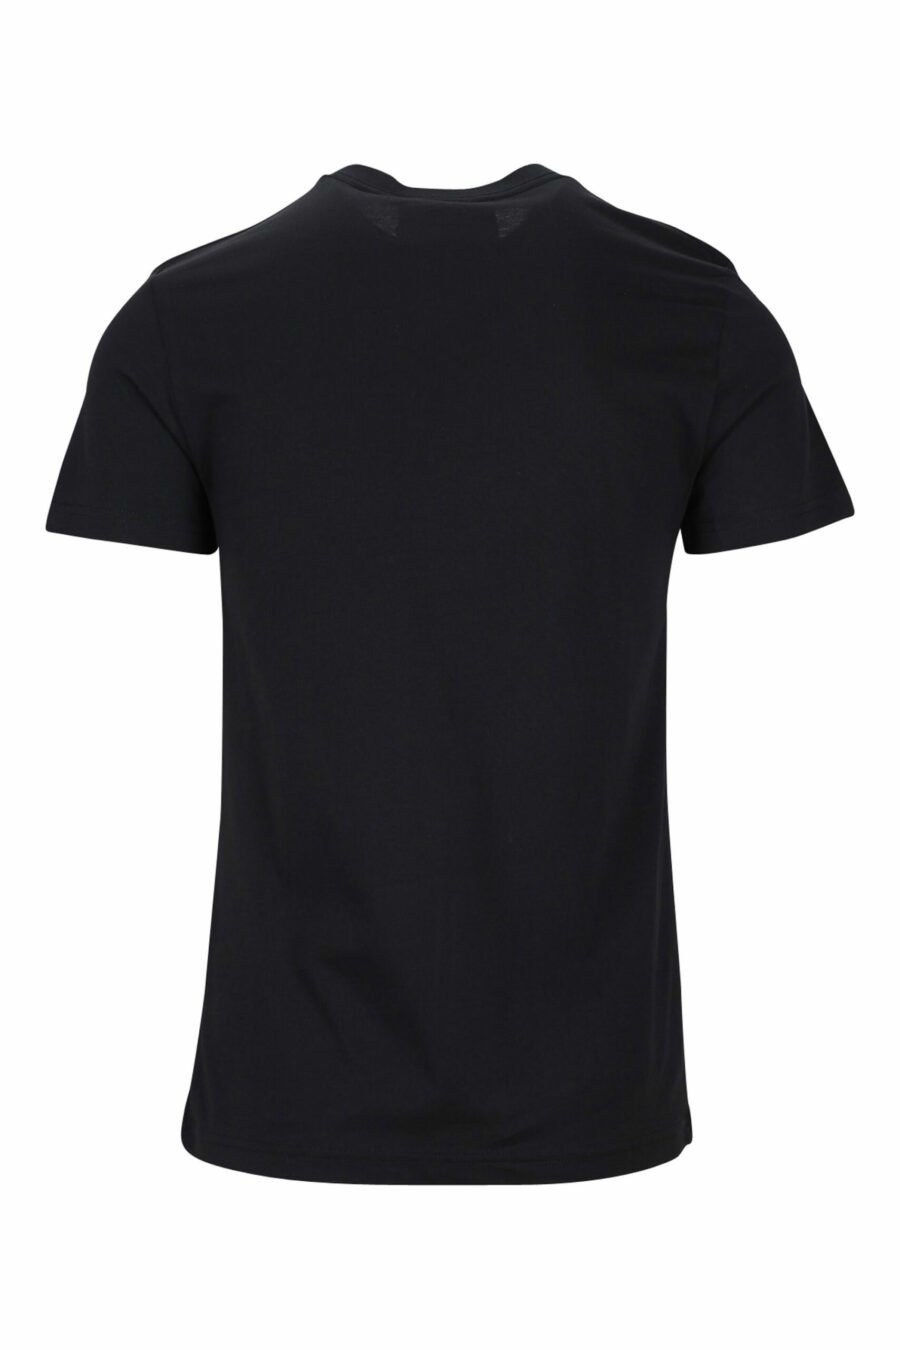 T-shirt noir avec minilogue doré "piece number" - 8052019456875 1 scaled